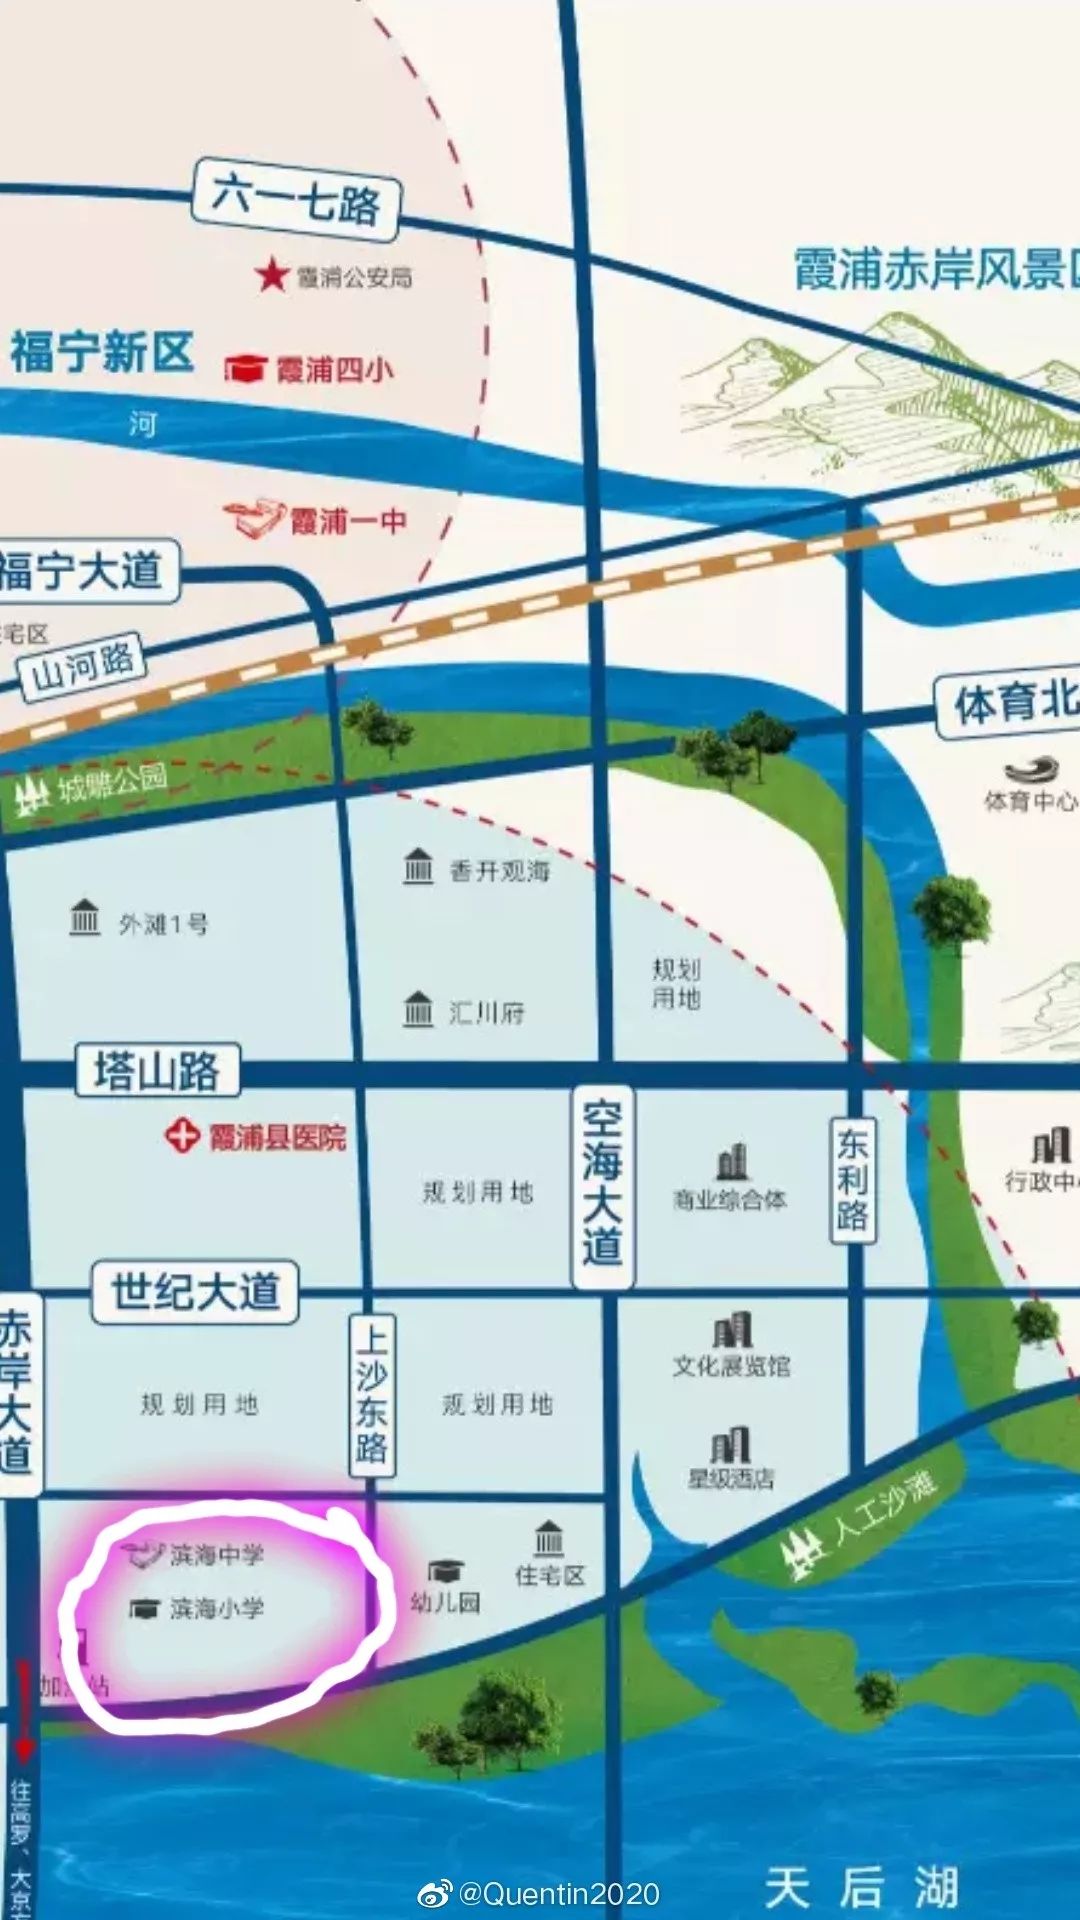 霞浦县滨海学校最新方案曝光,规划用地48亩,拟办36个班